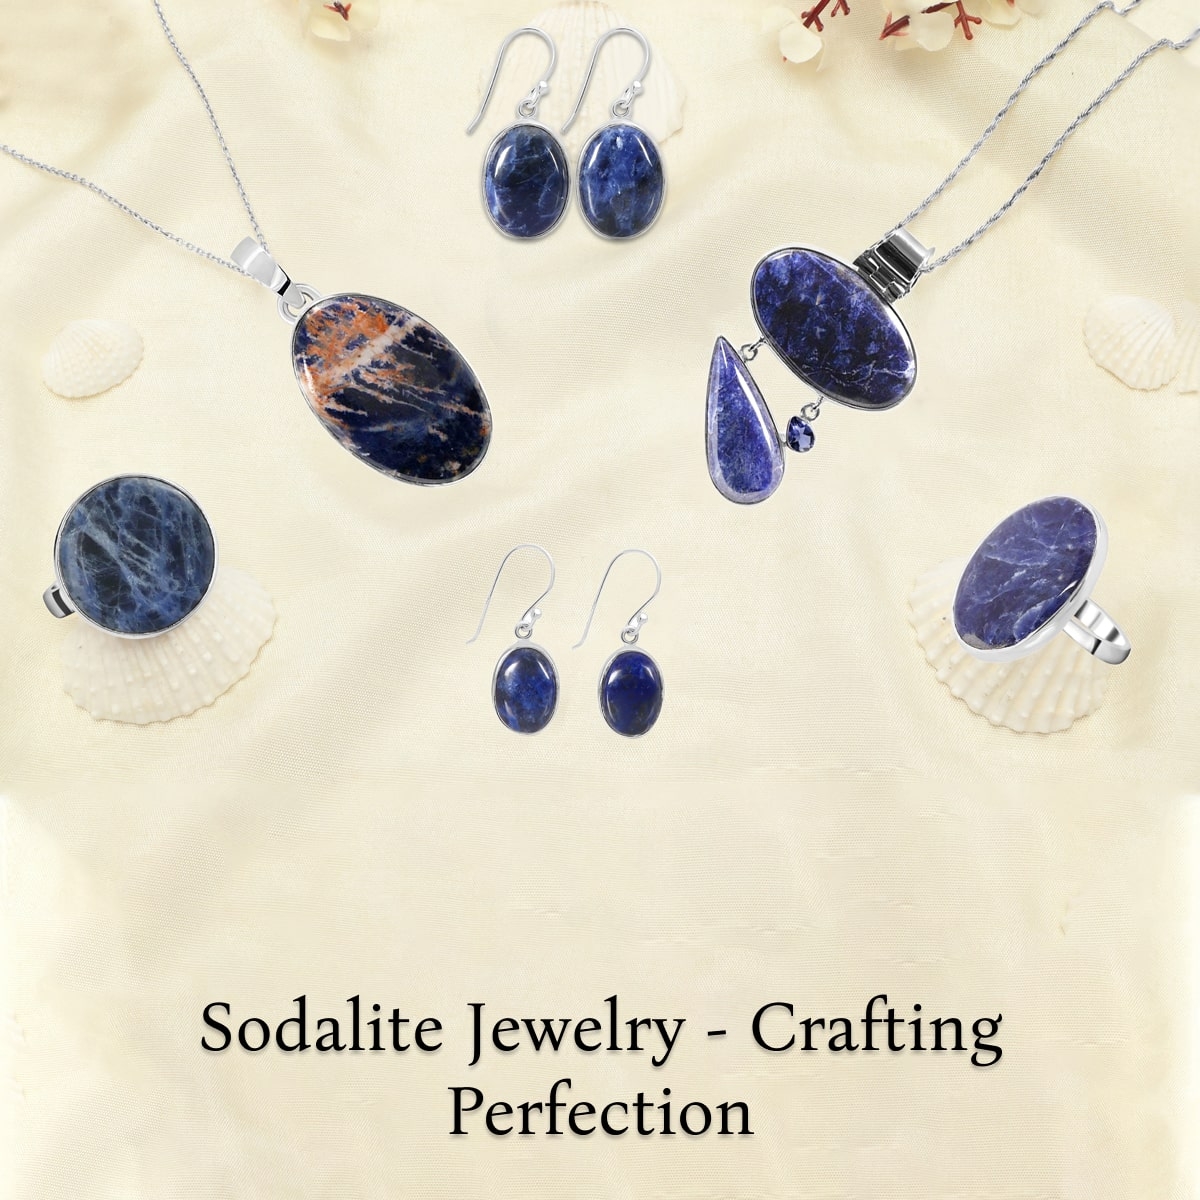 Sodalite Jewelry